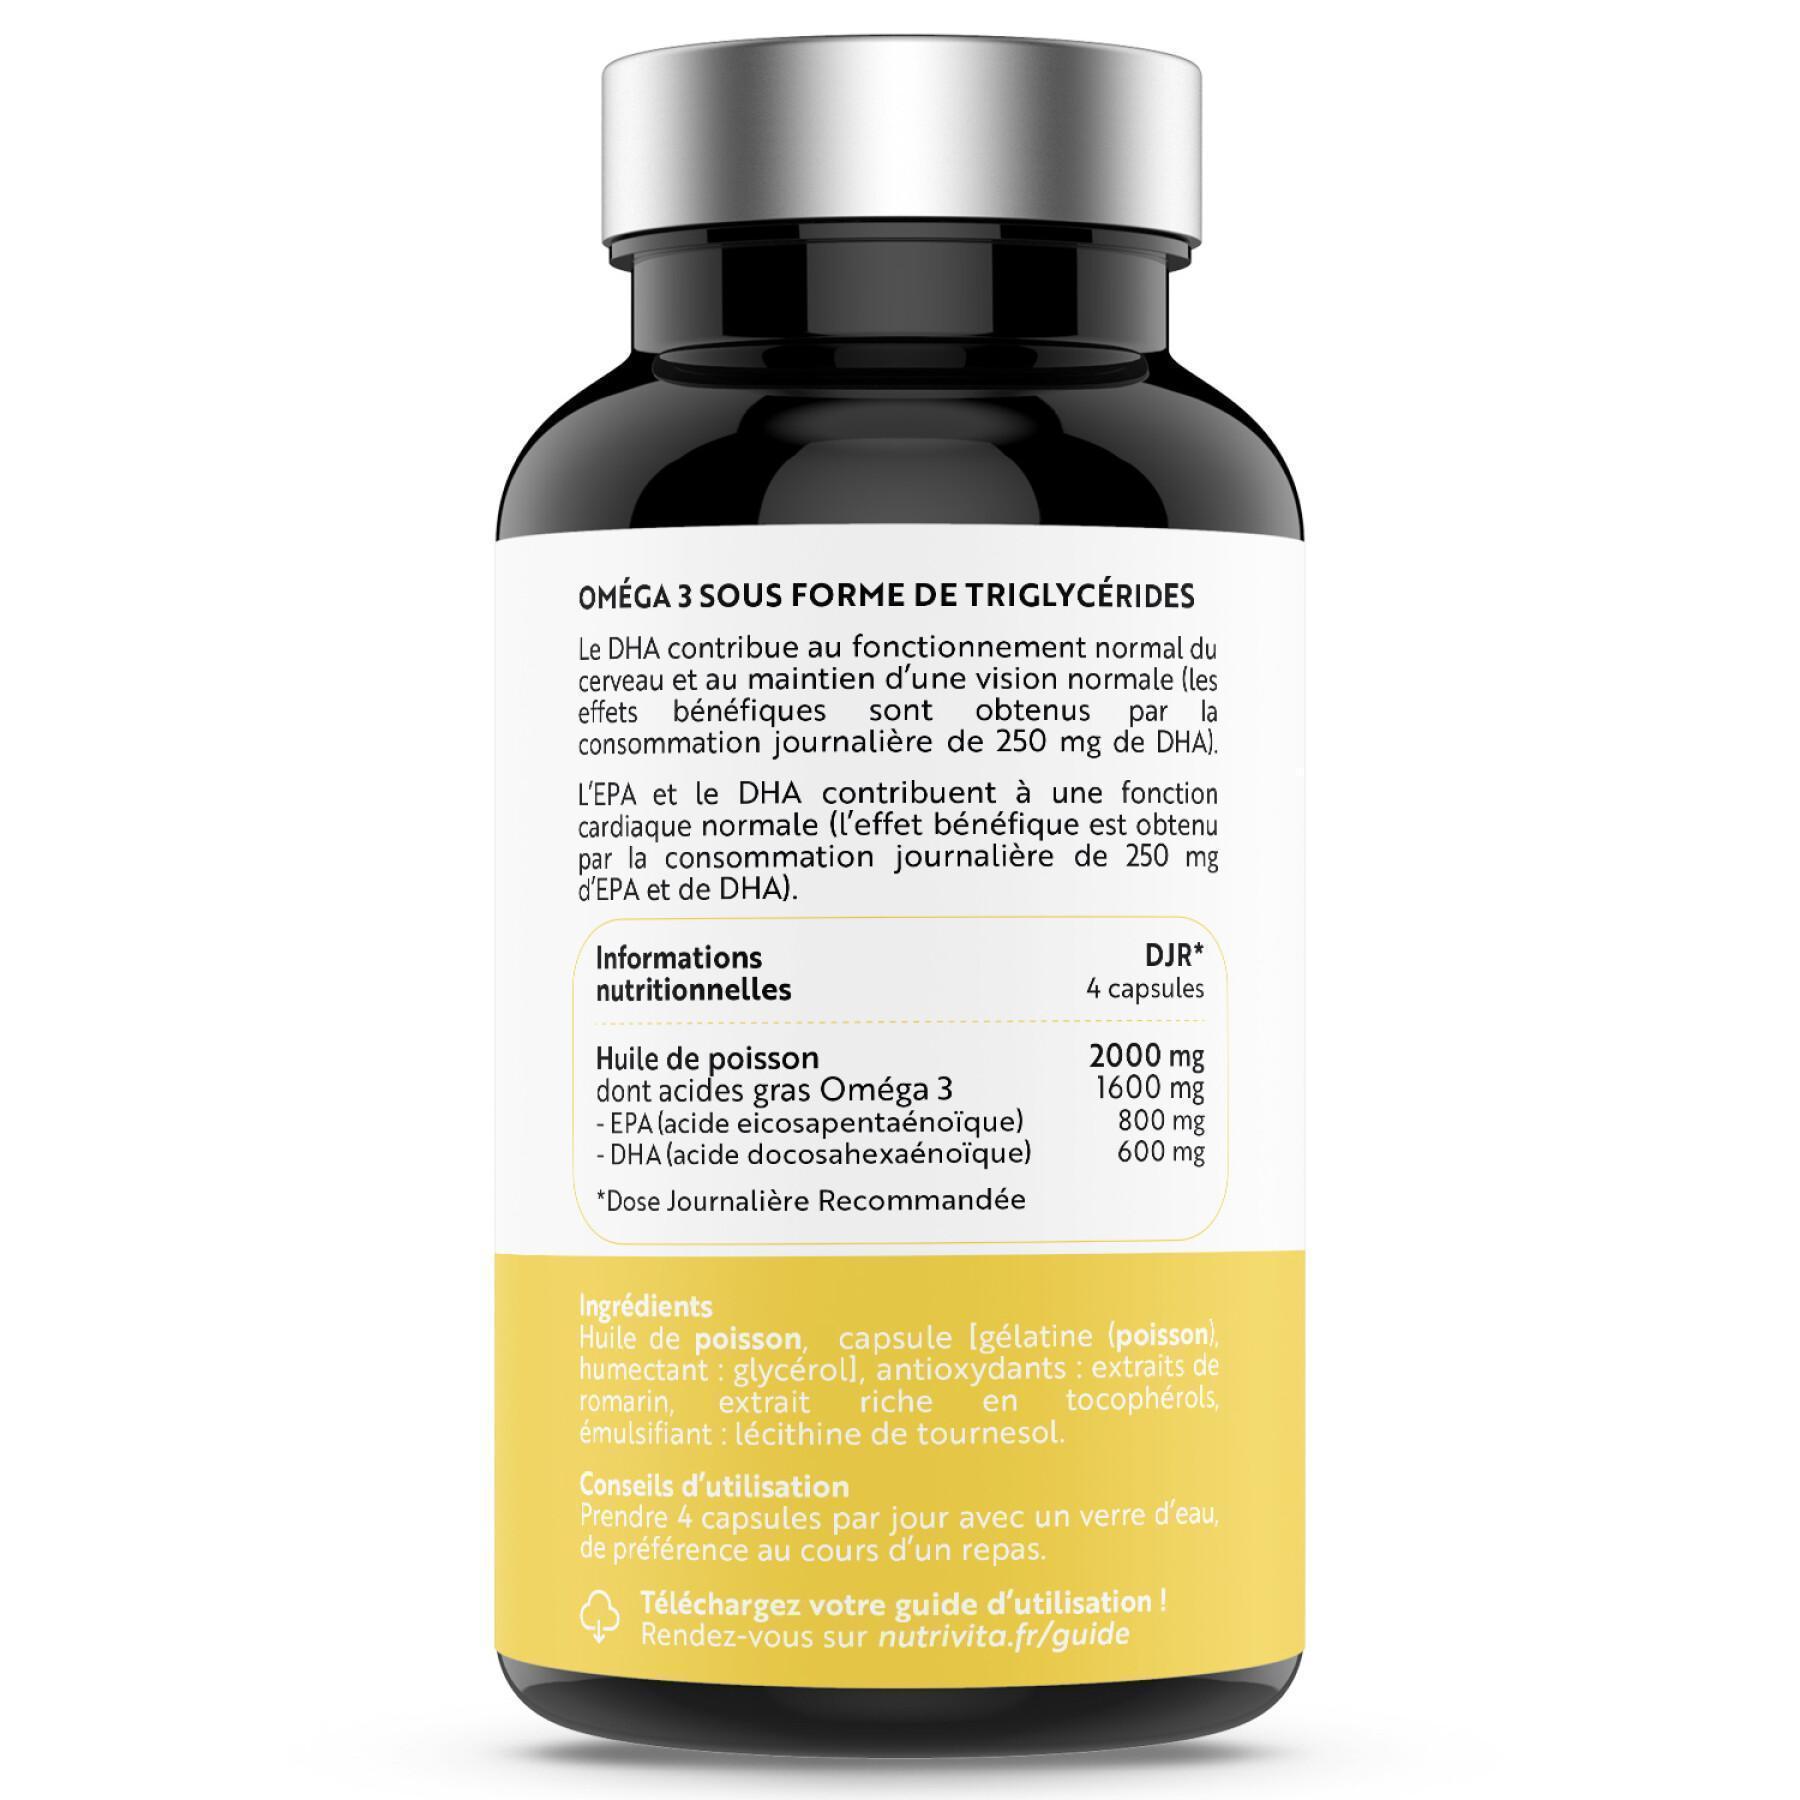 Omega 3 voedingssupplement - 120 capsules Nutrivita